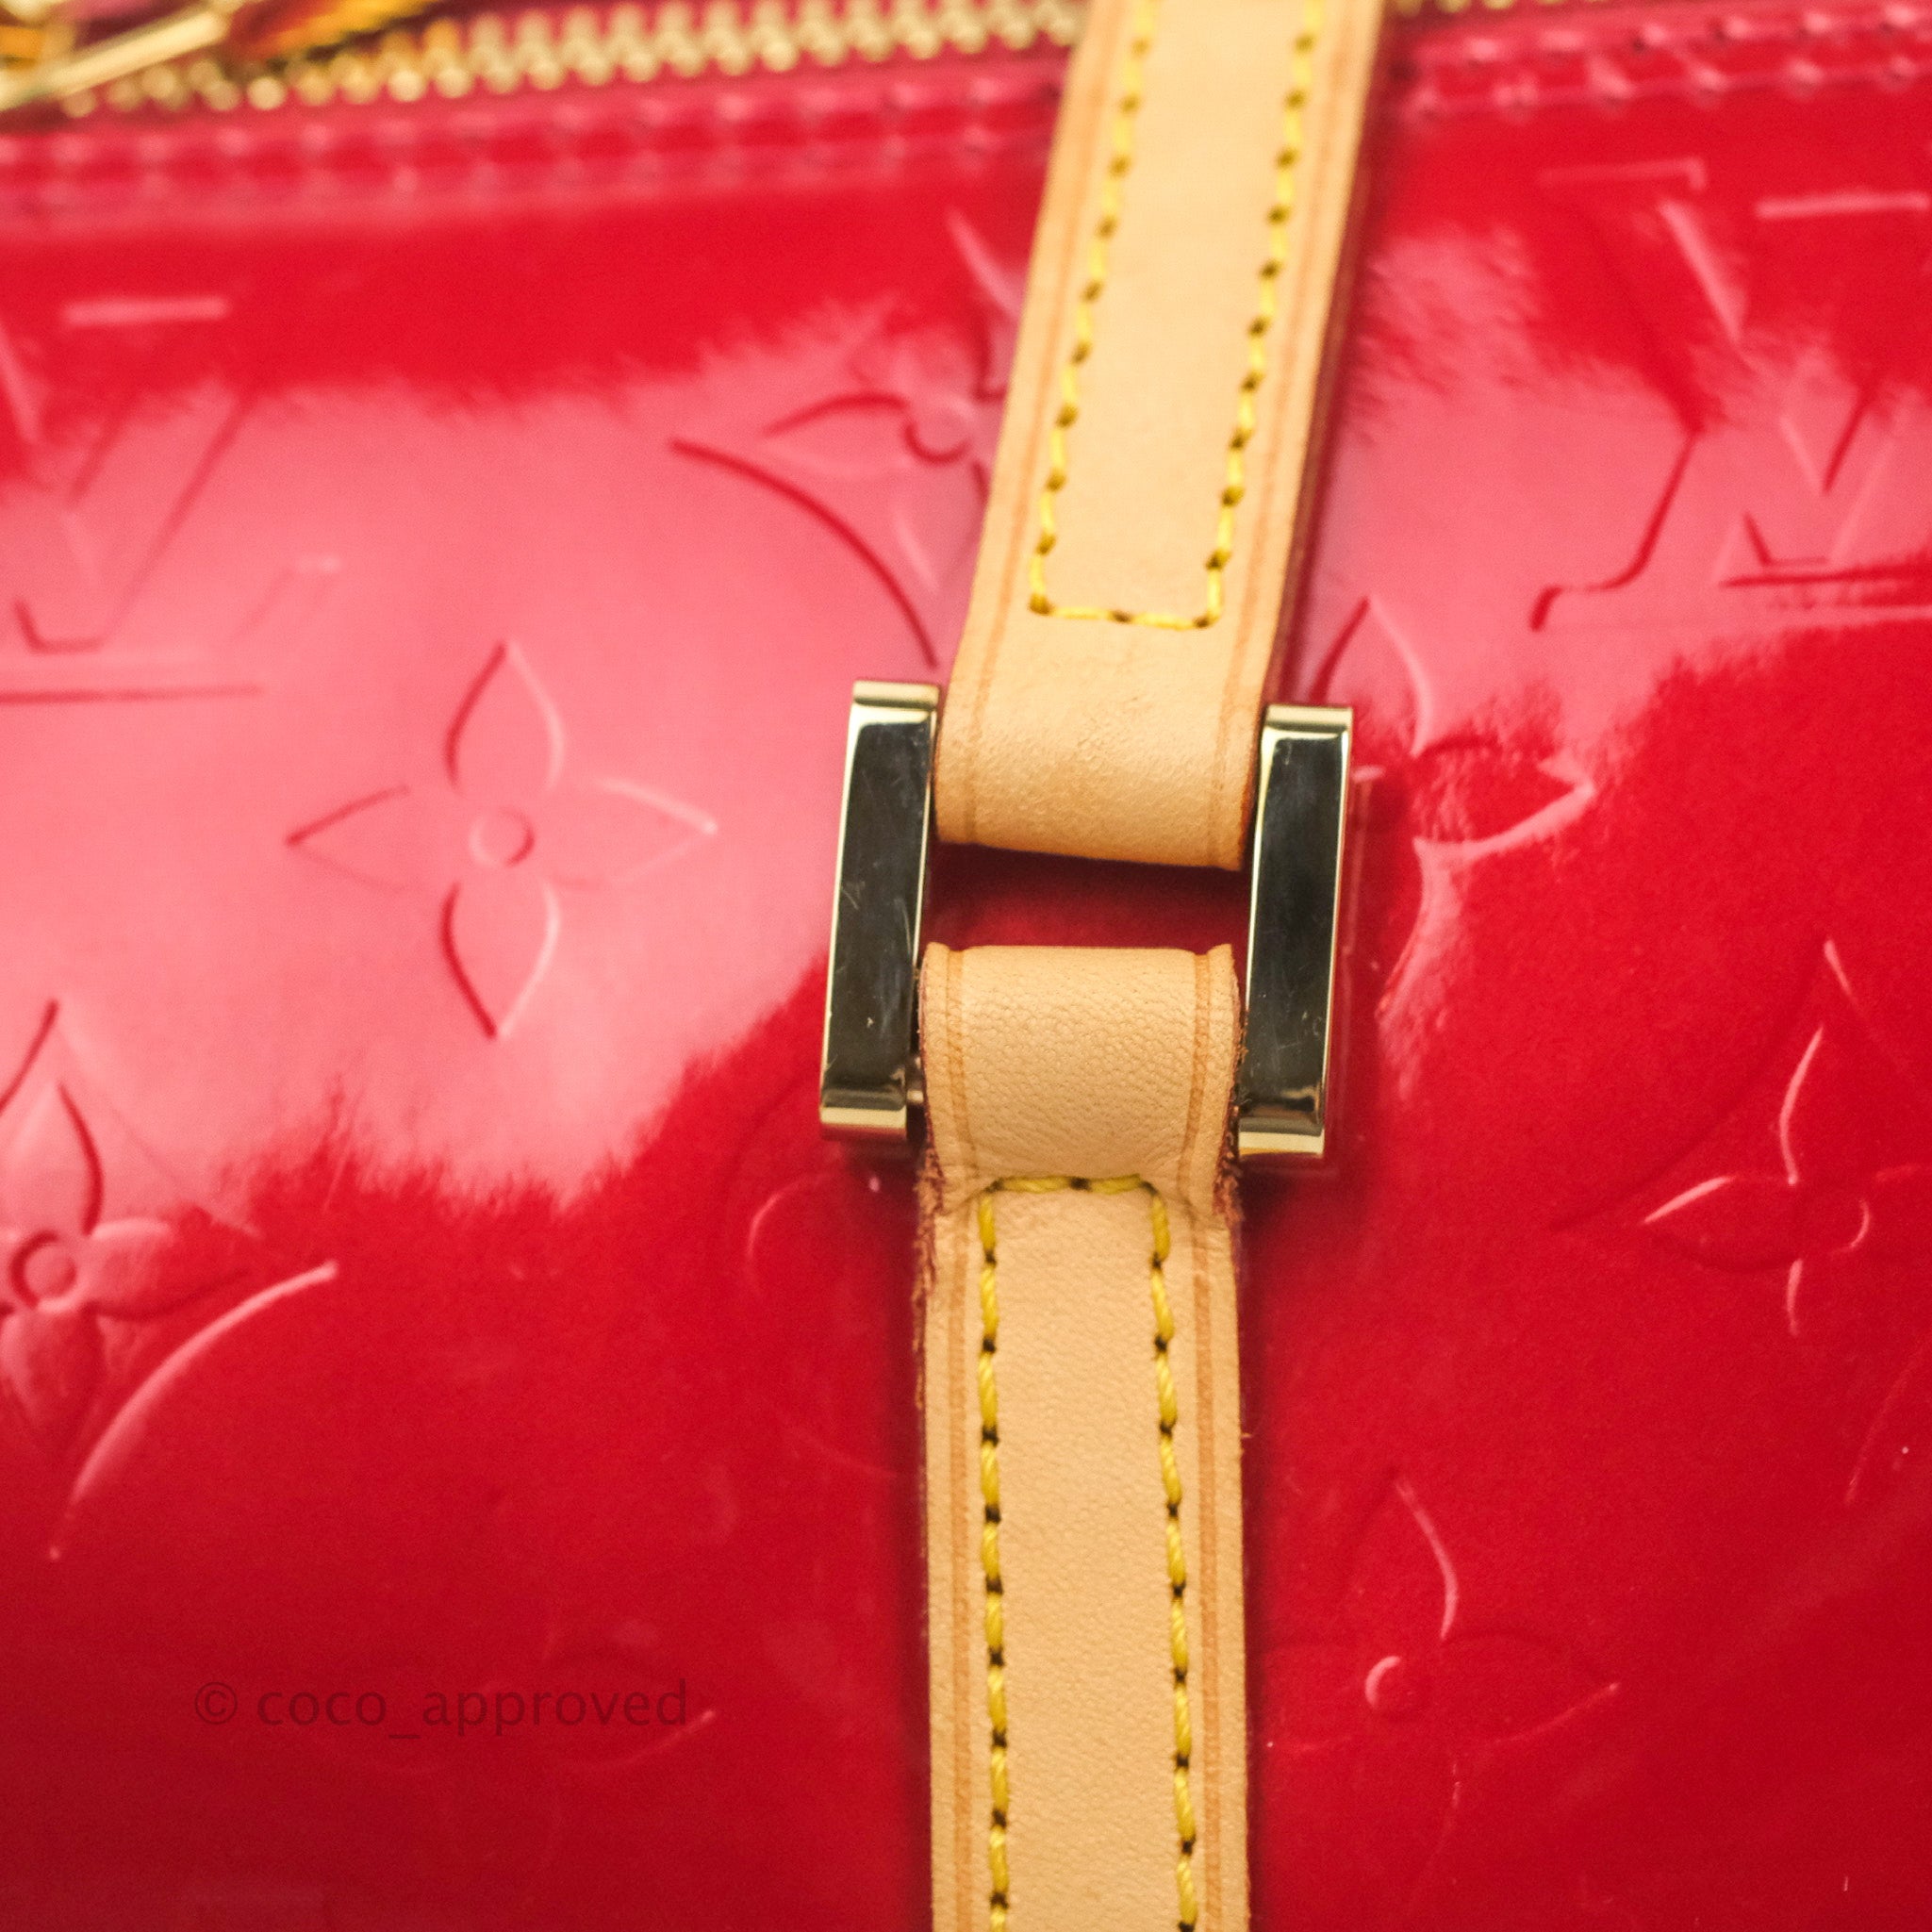 Louis Vuitton Vintage Vernis Papillon 30 - Red Handle Bags, Handbags -  LOU771589